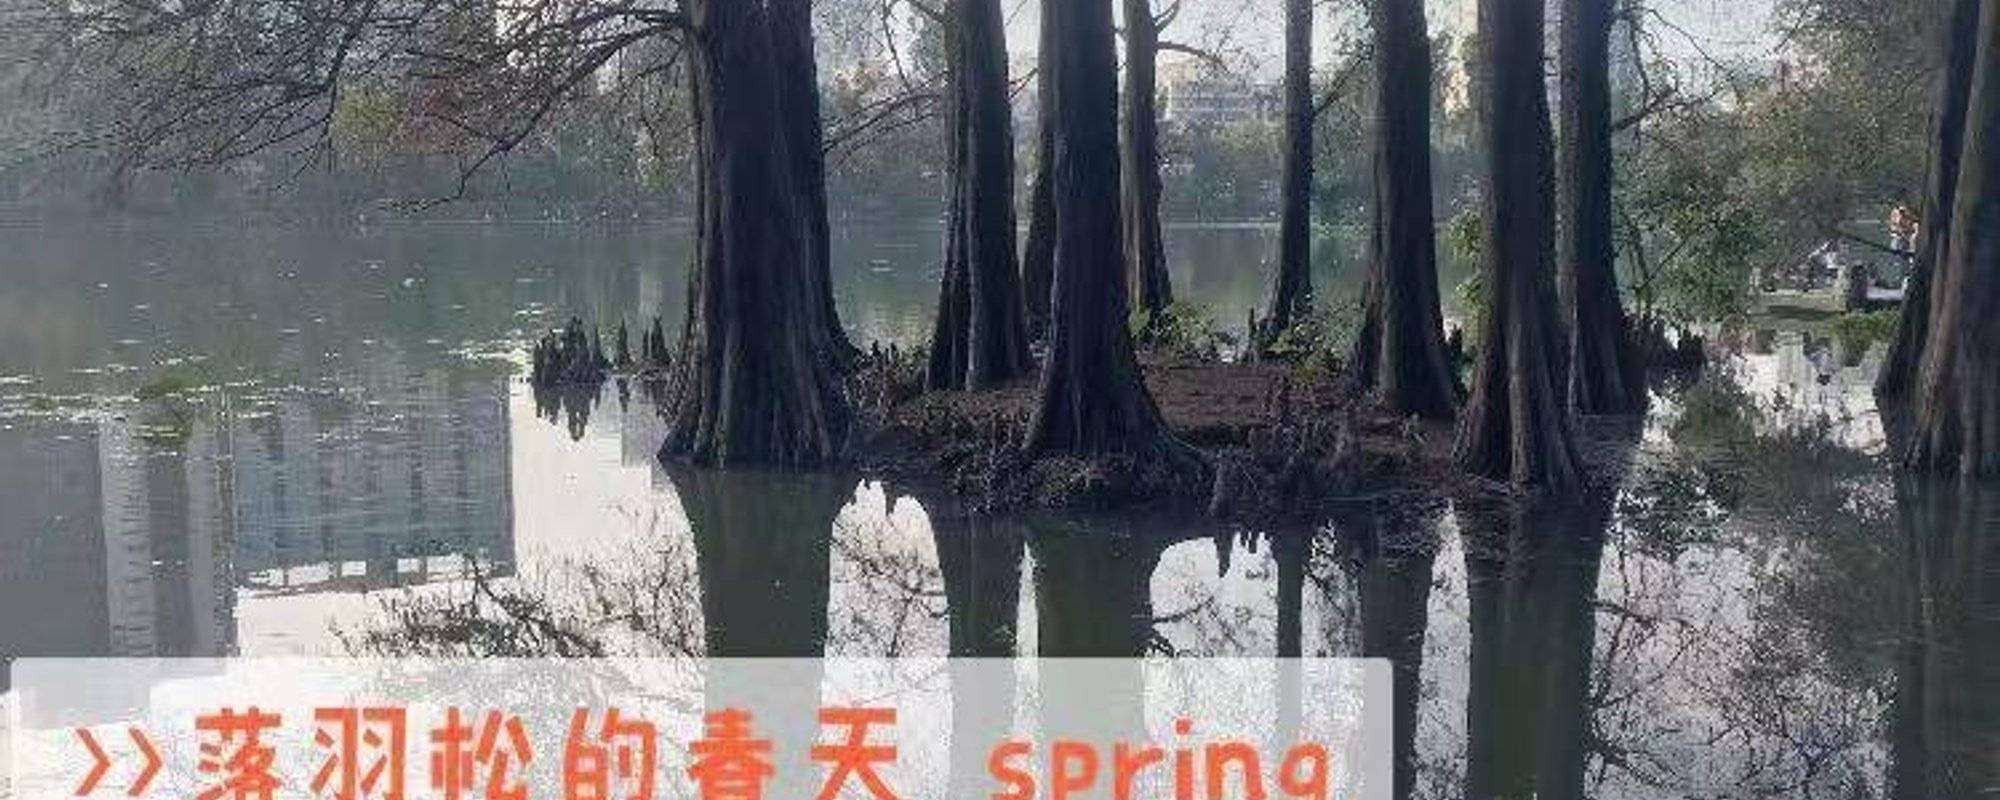 Honghu Park-Fallen Cedar in Spring  洪湖公园--春天的落羽杉